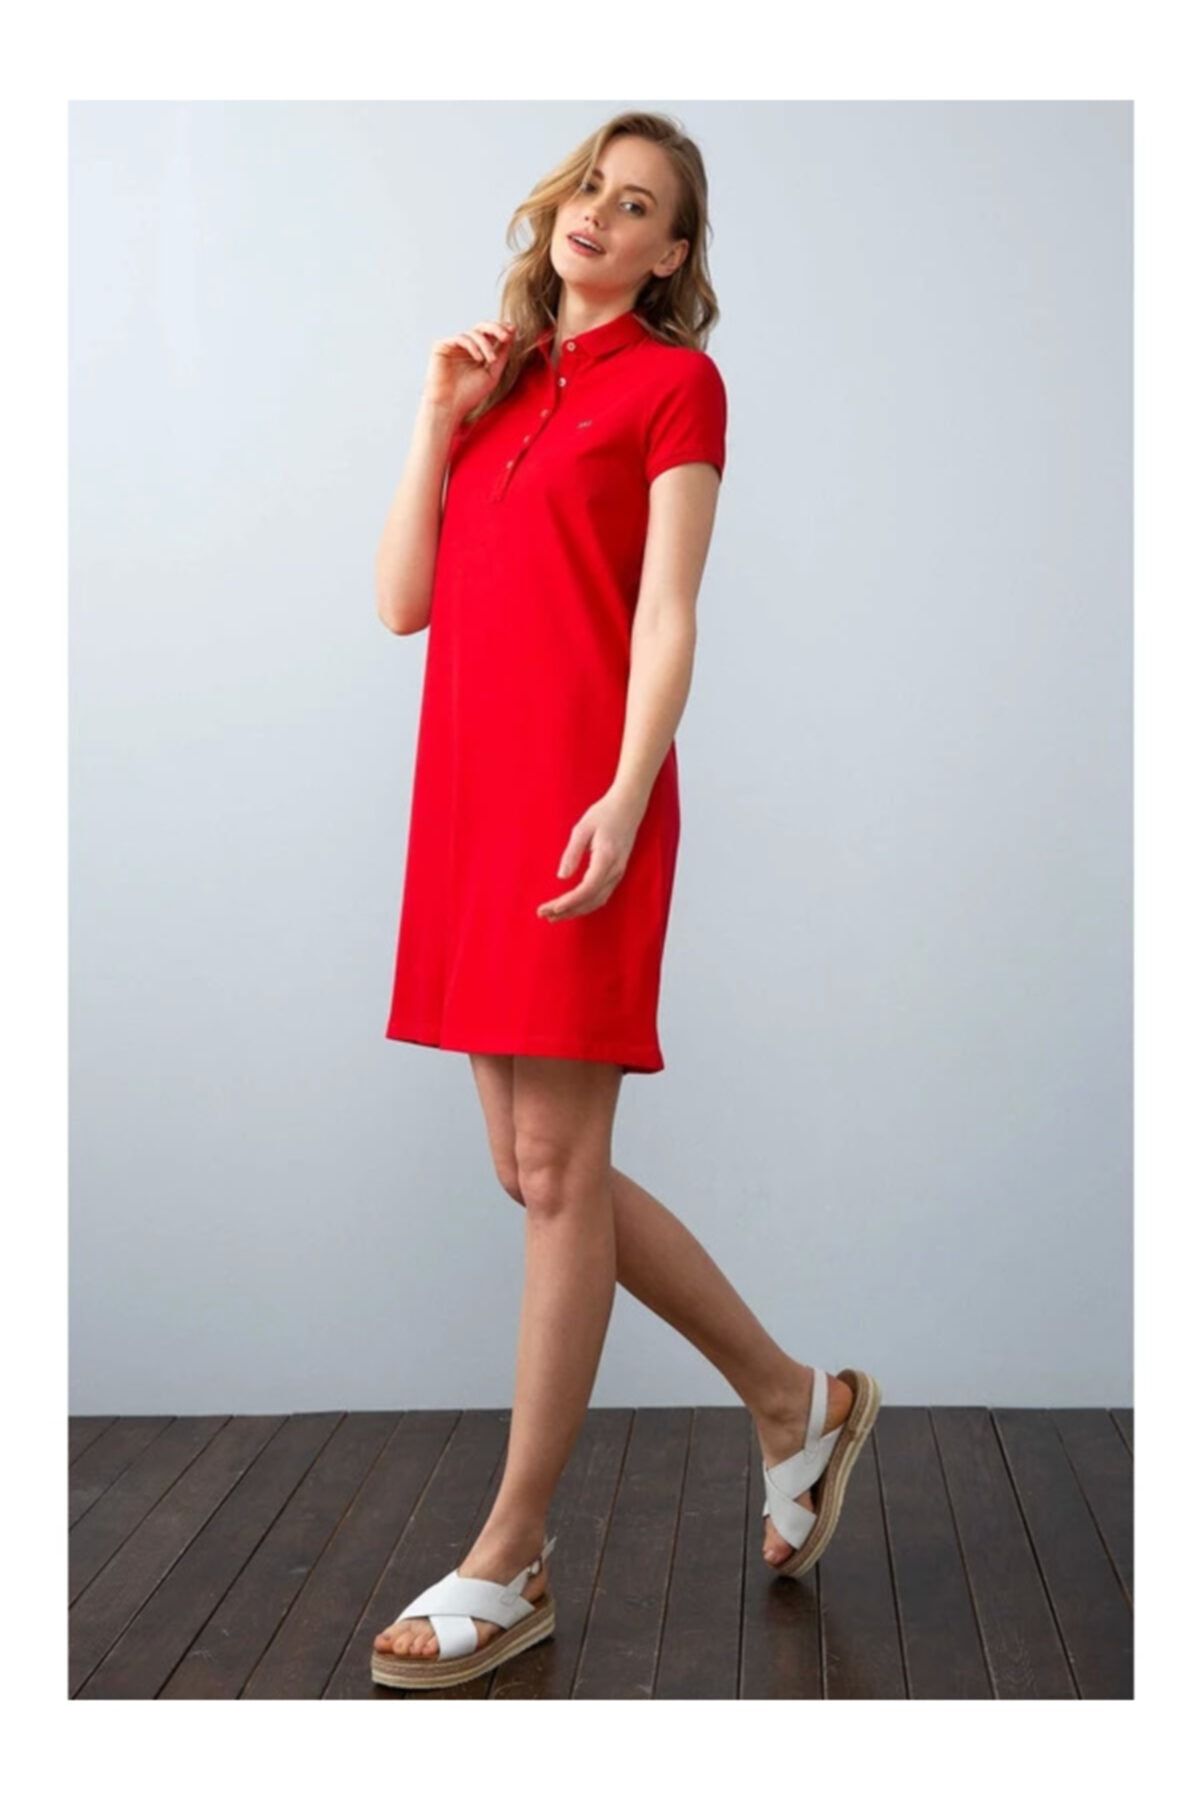 U.S. Polo Assn. Kadın Kırmızı Örme Elbise 949478 Mıso 030